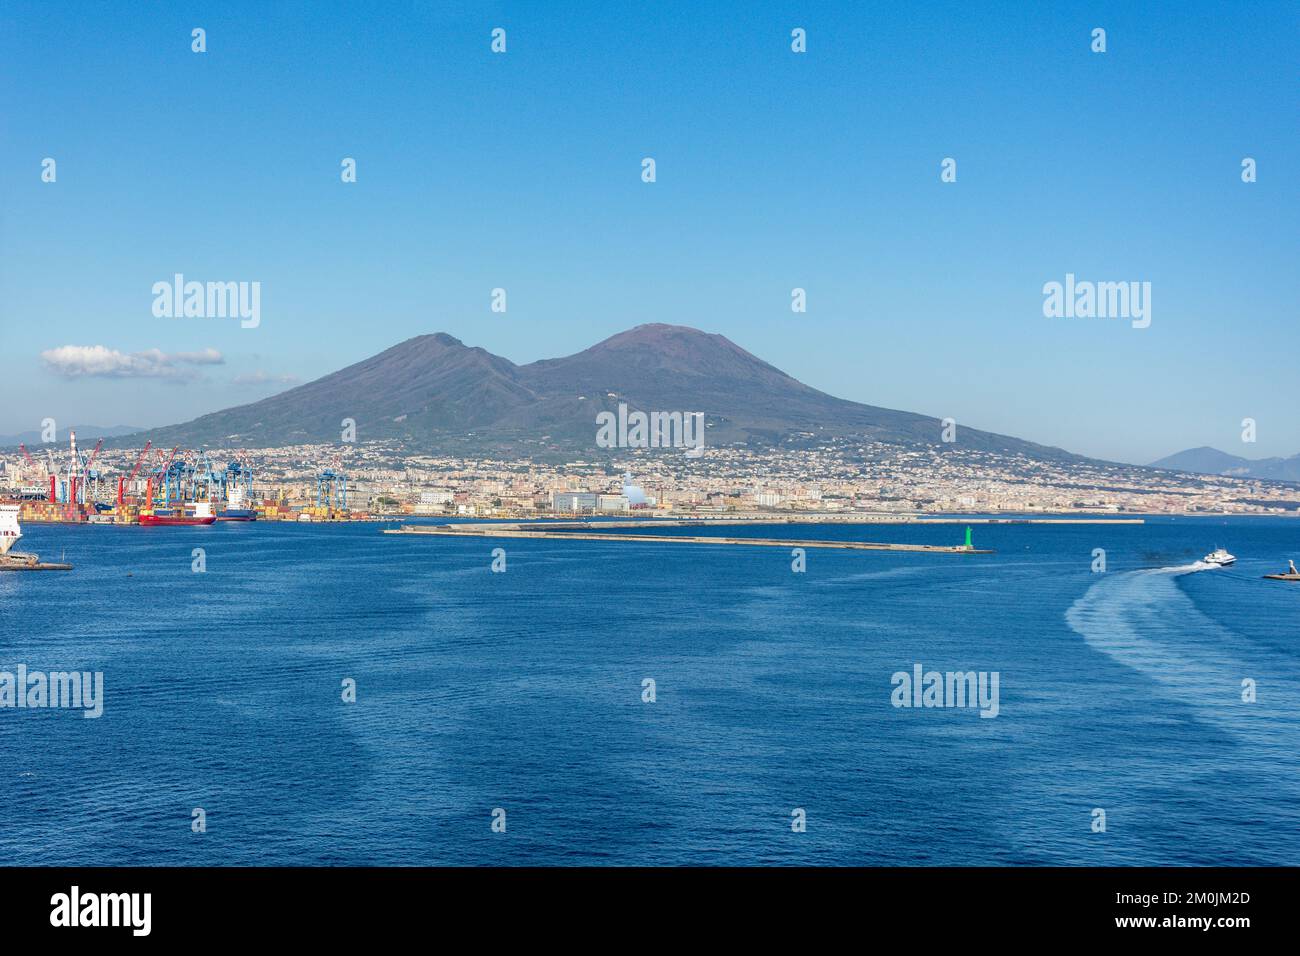 Mont Vésuve de la baie de Naples, ville de Naples (Naples), région Campanie, Italie Banque D'Images